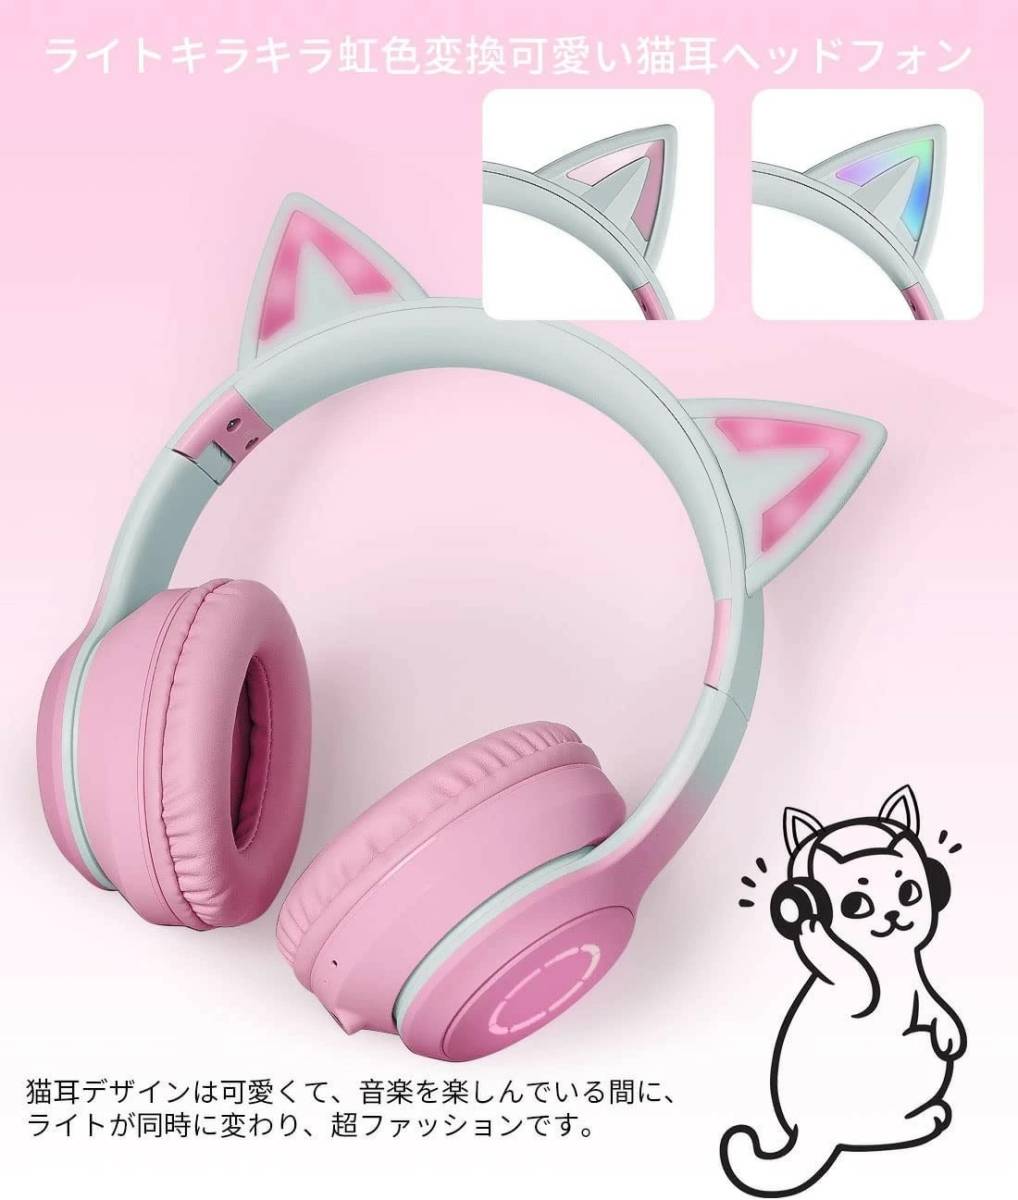 猫耳 ヘッドホン ライト ピンク 可愛い 無線 対応 Bluetooth LED 虹色発光 ワイヤレス ヘッドフォン ヘッドホン ヘッドセット スマホ_画像6